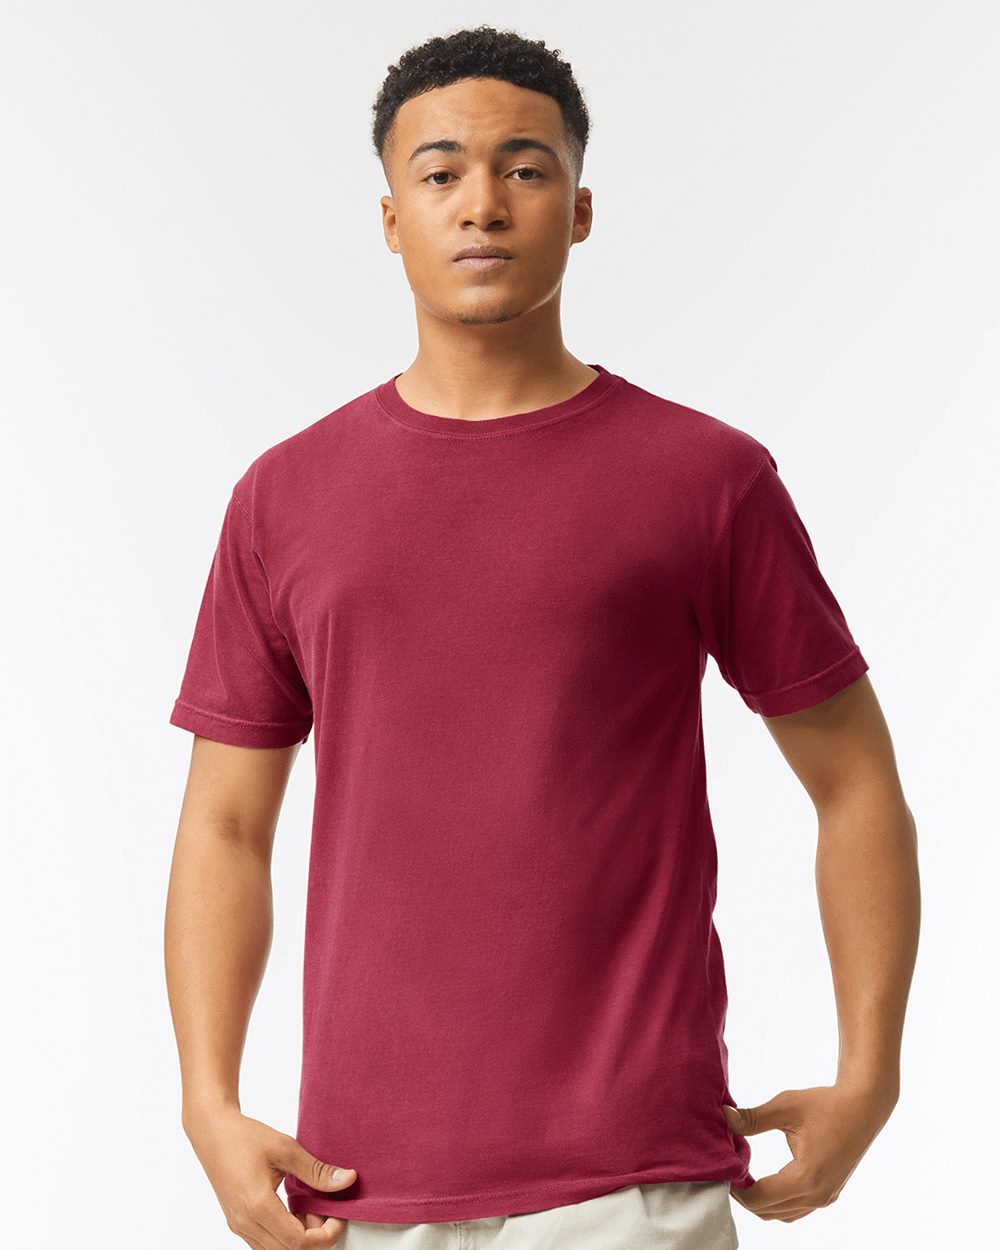 Garment-Dyed Lightweight T-Shirt - Comfort Colors 4017